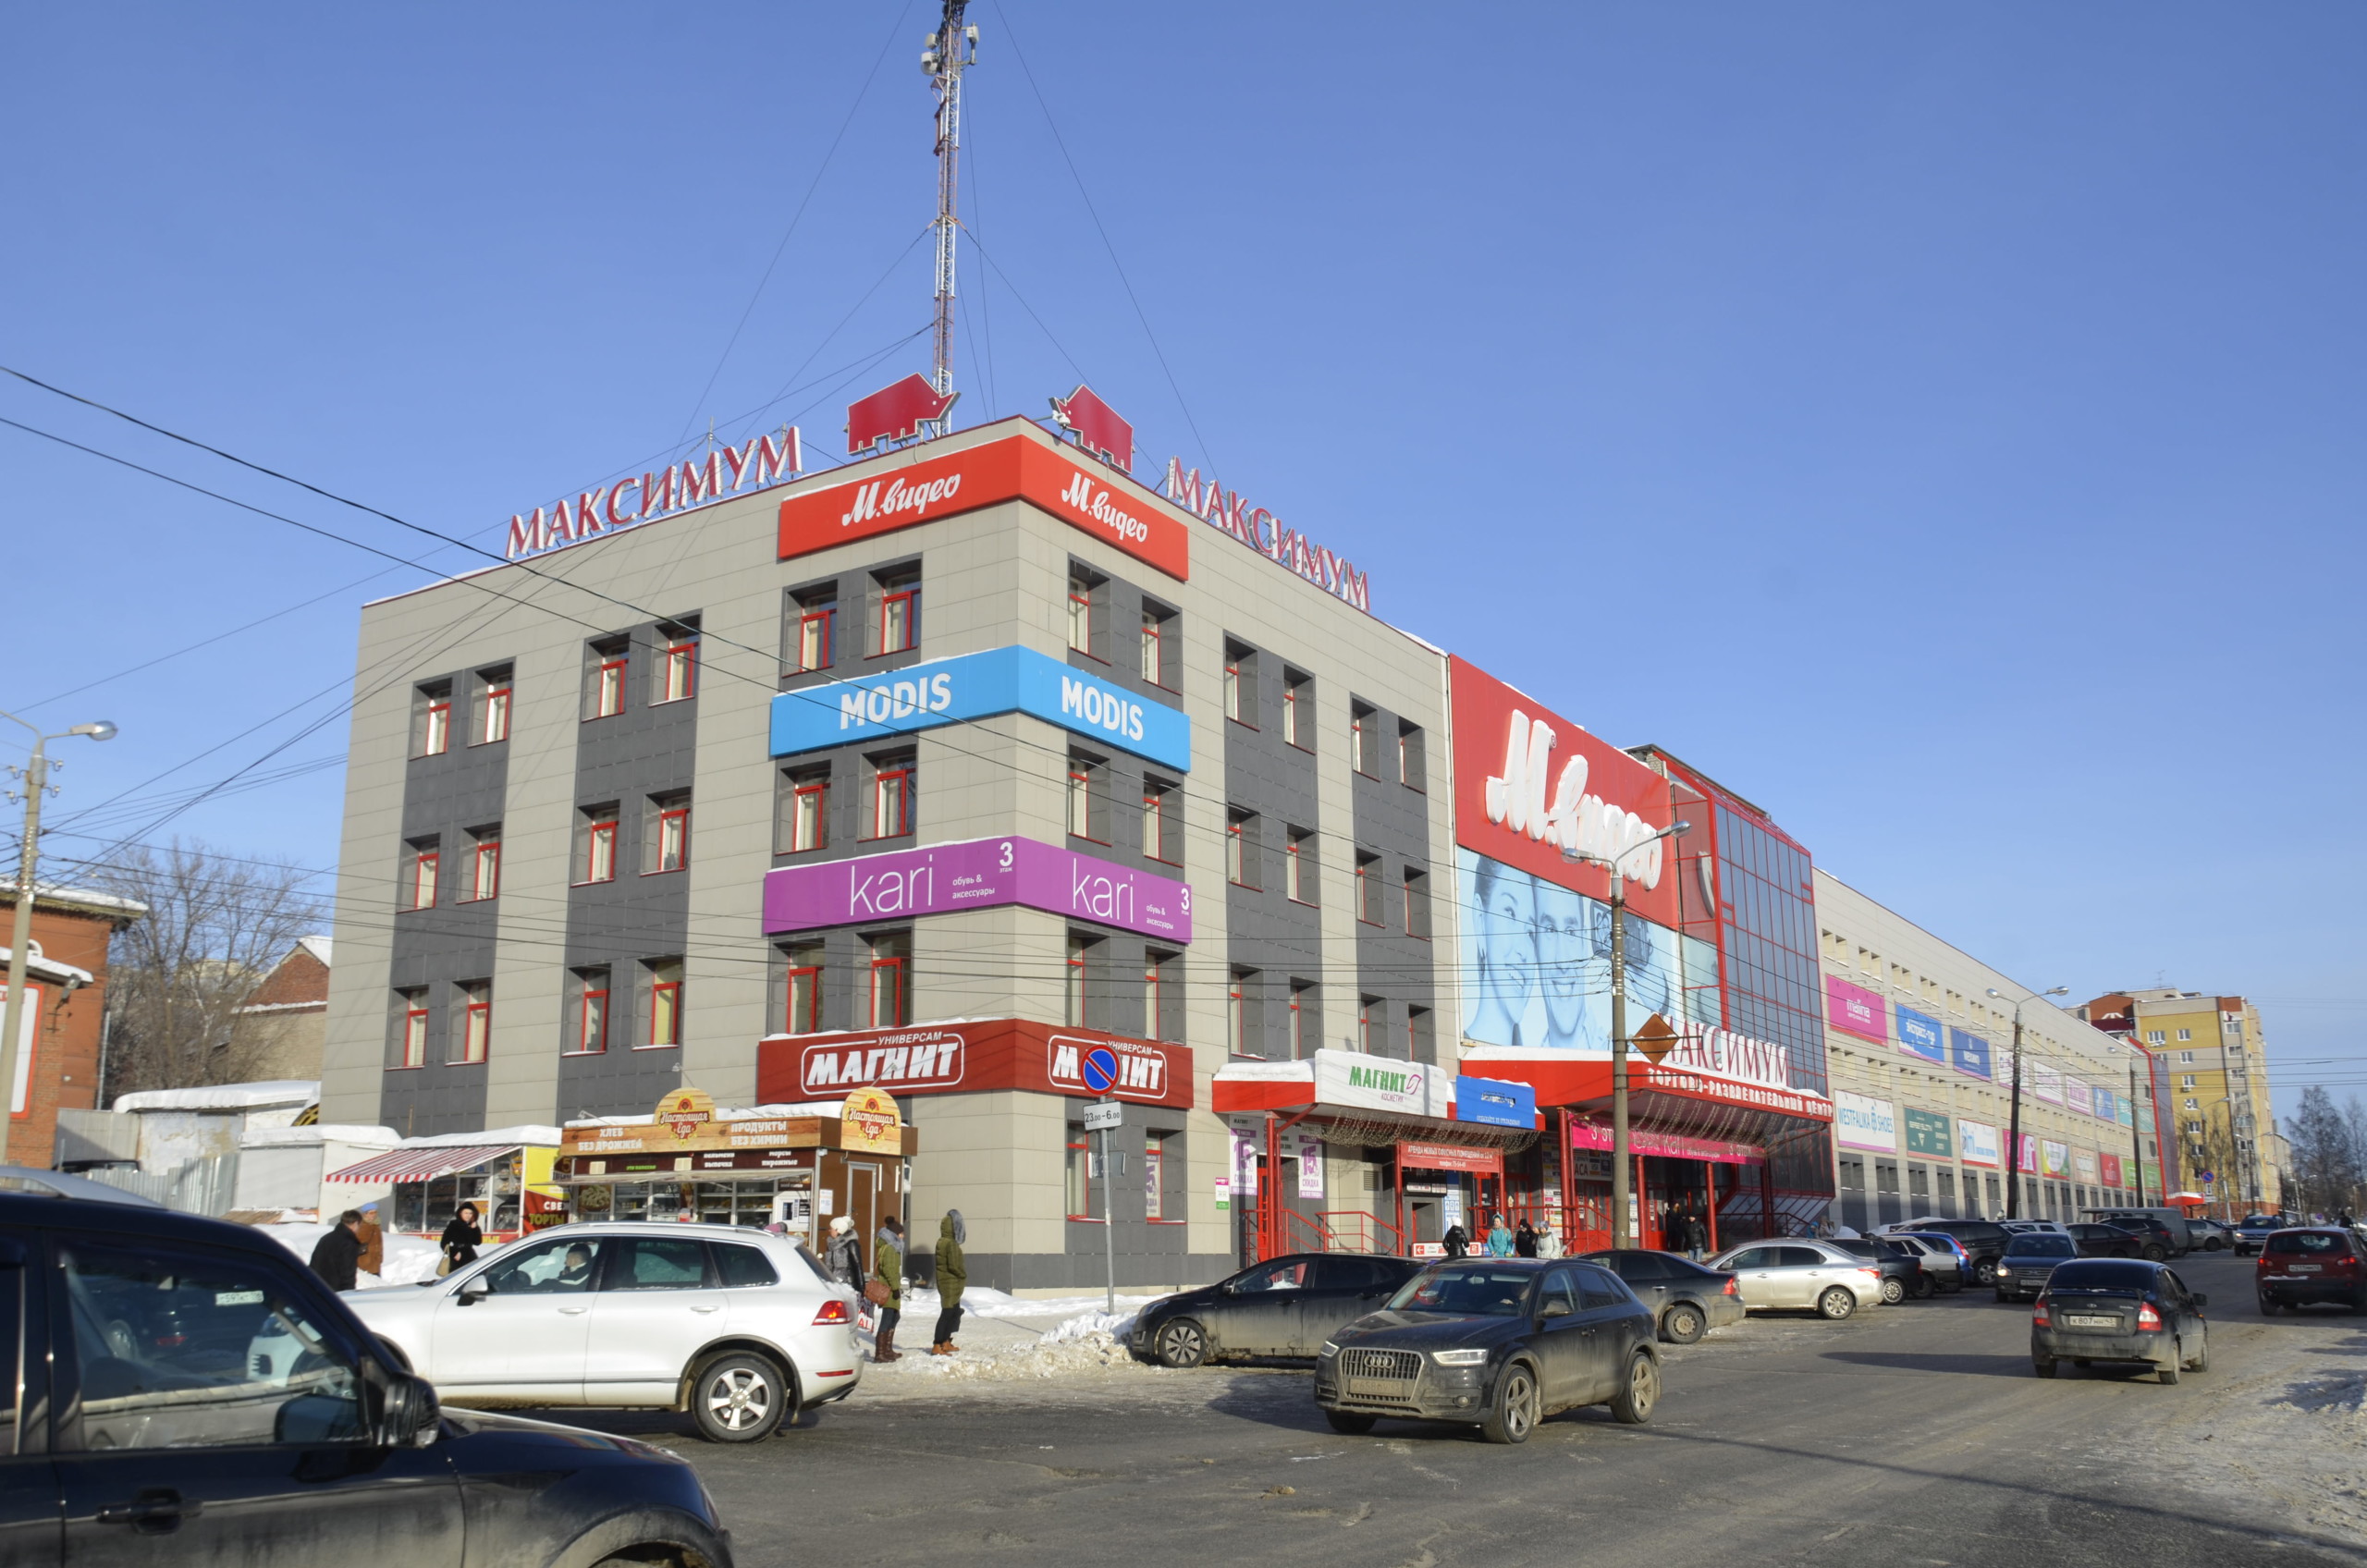 «Максимум» в Кирове - пример успешного проекта торгового центра. Он был открыт 30 сентября 2009 года и за годы работы завоевал популярность